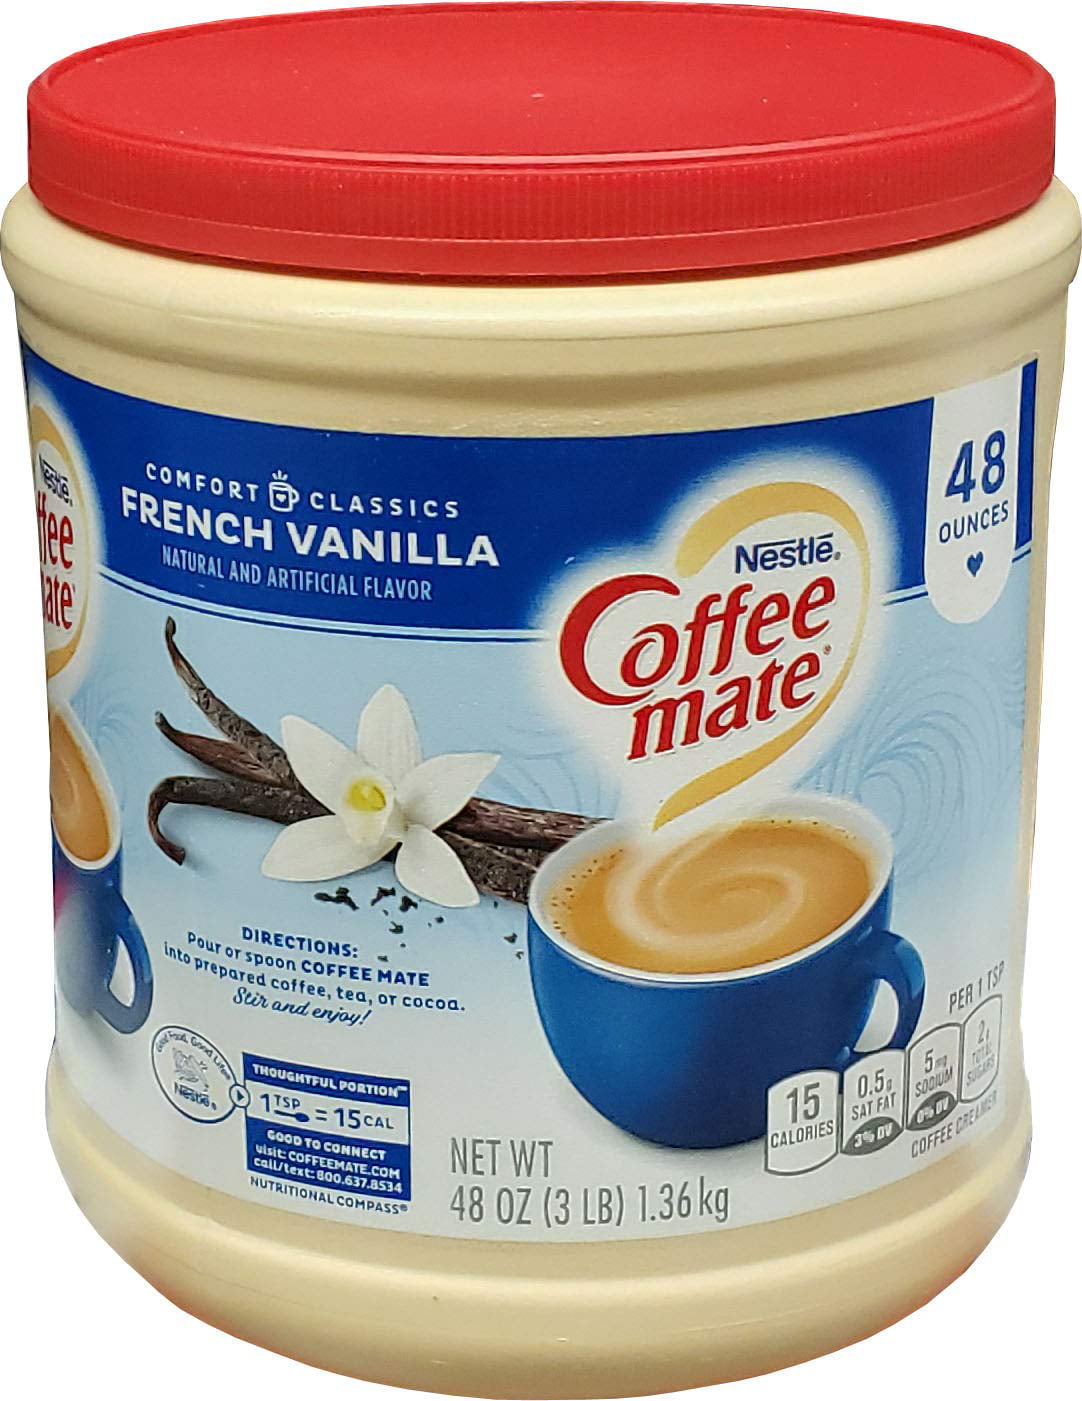 French vanilla. Французская ваниль. Coffee Mate French Vanilla. Ванильный Кример для кофе. Кофе и ваниль.